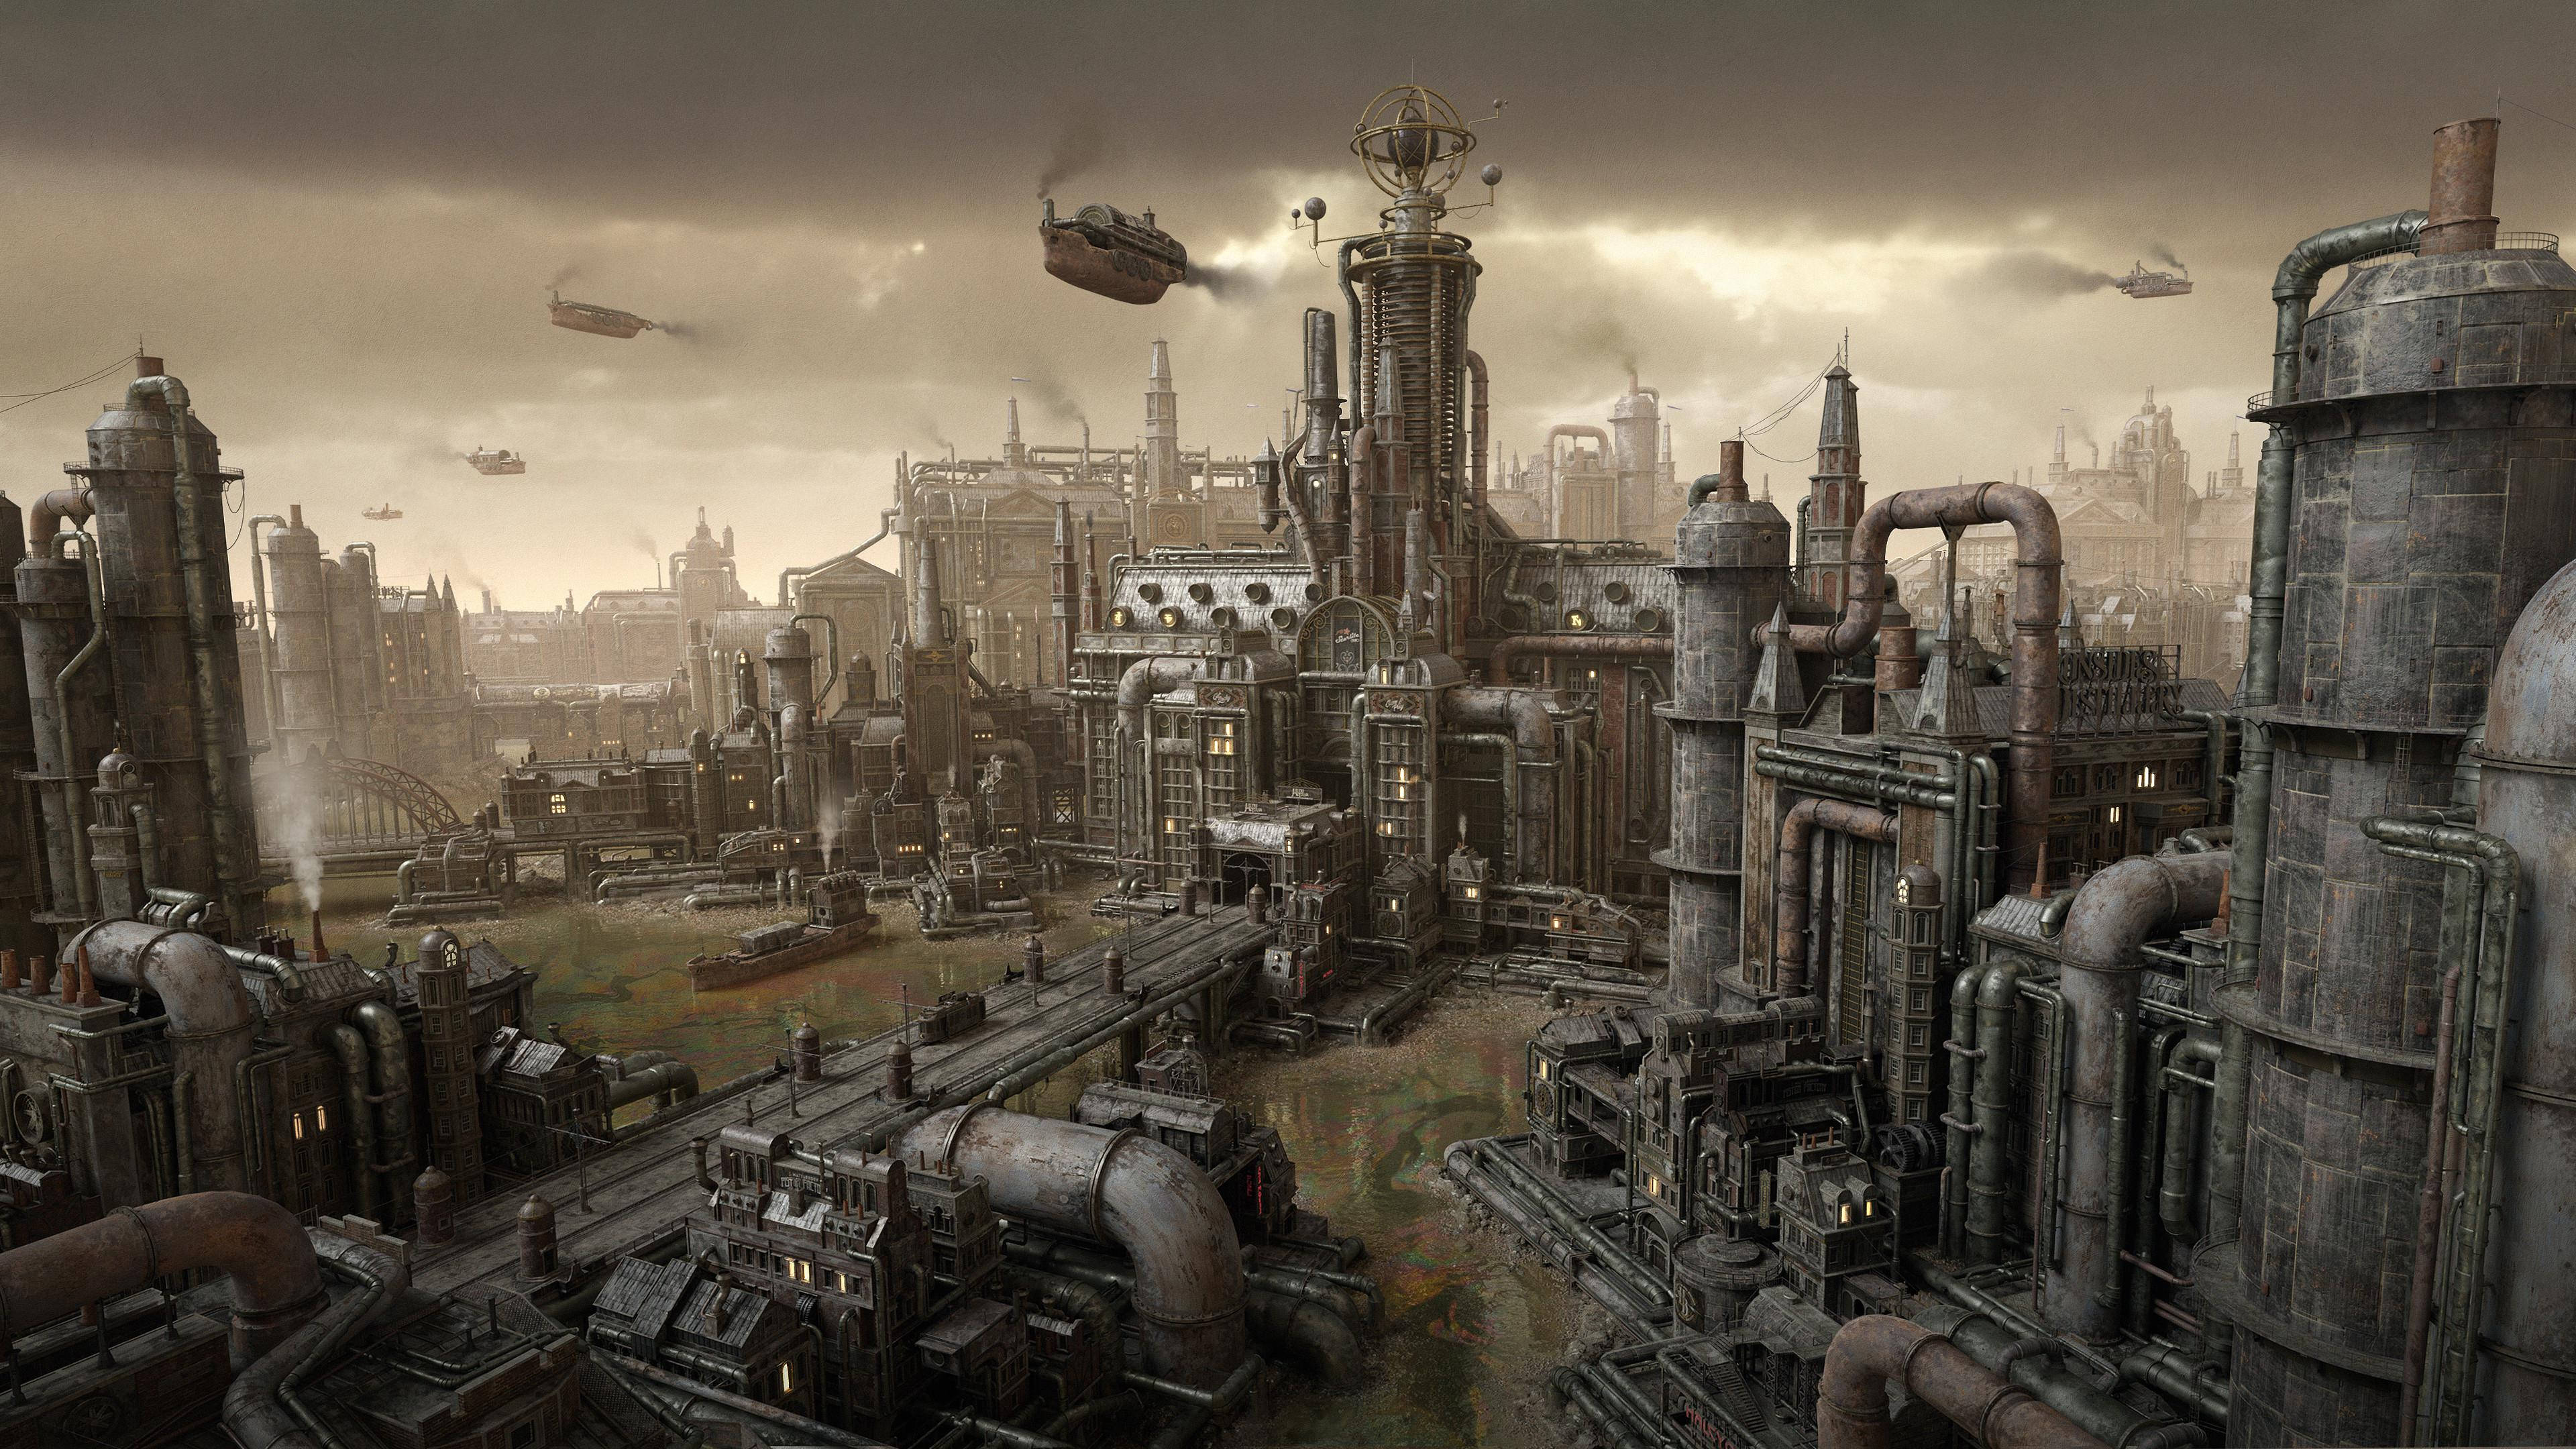 Full 4k Steampunk Industrial City Wallpaper